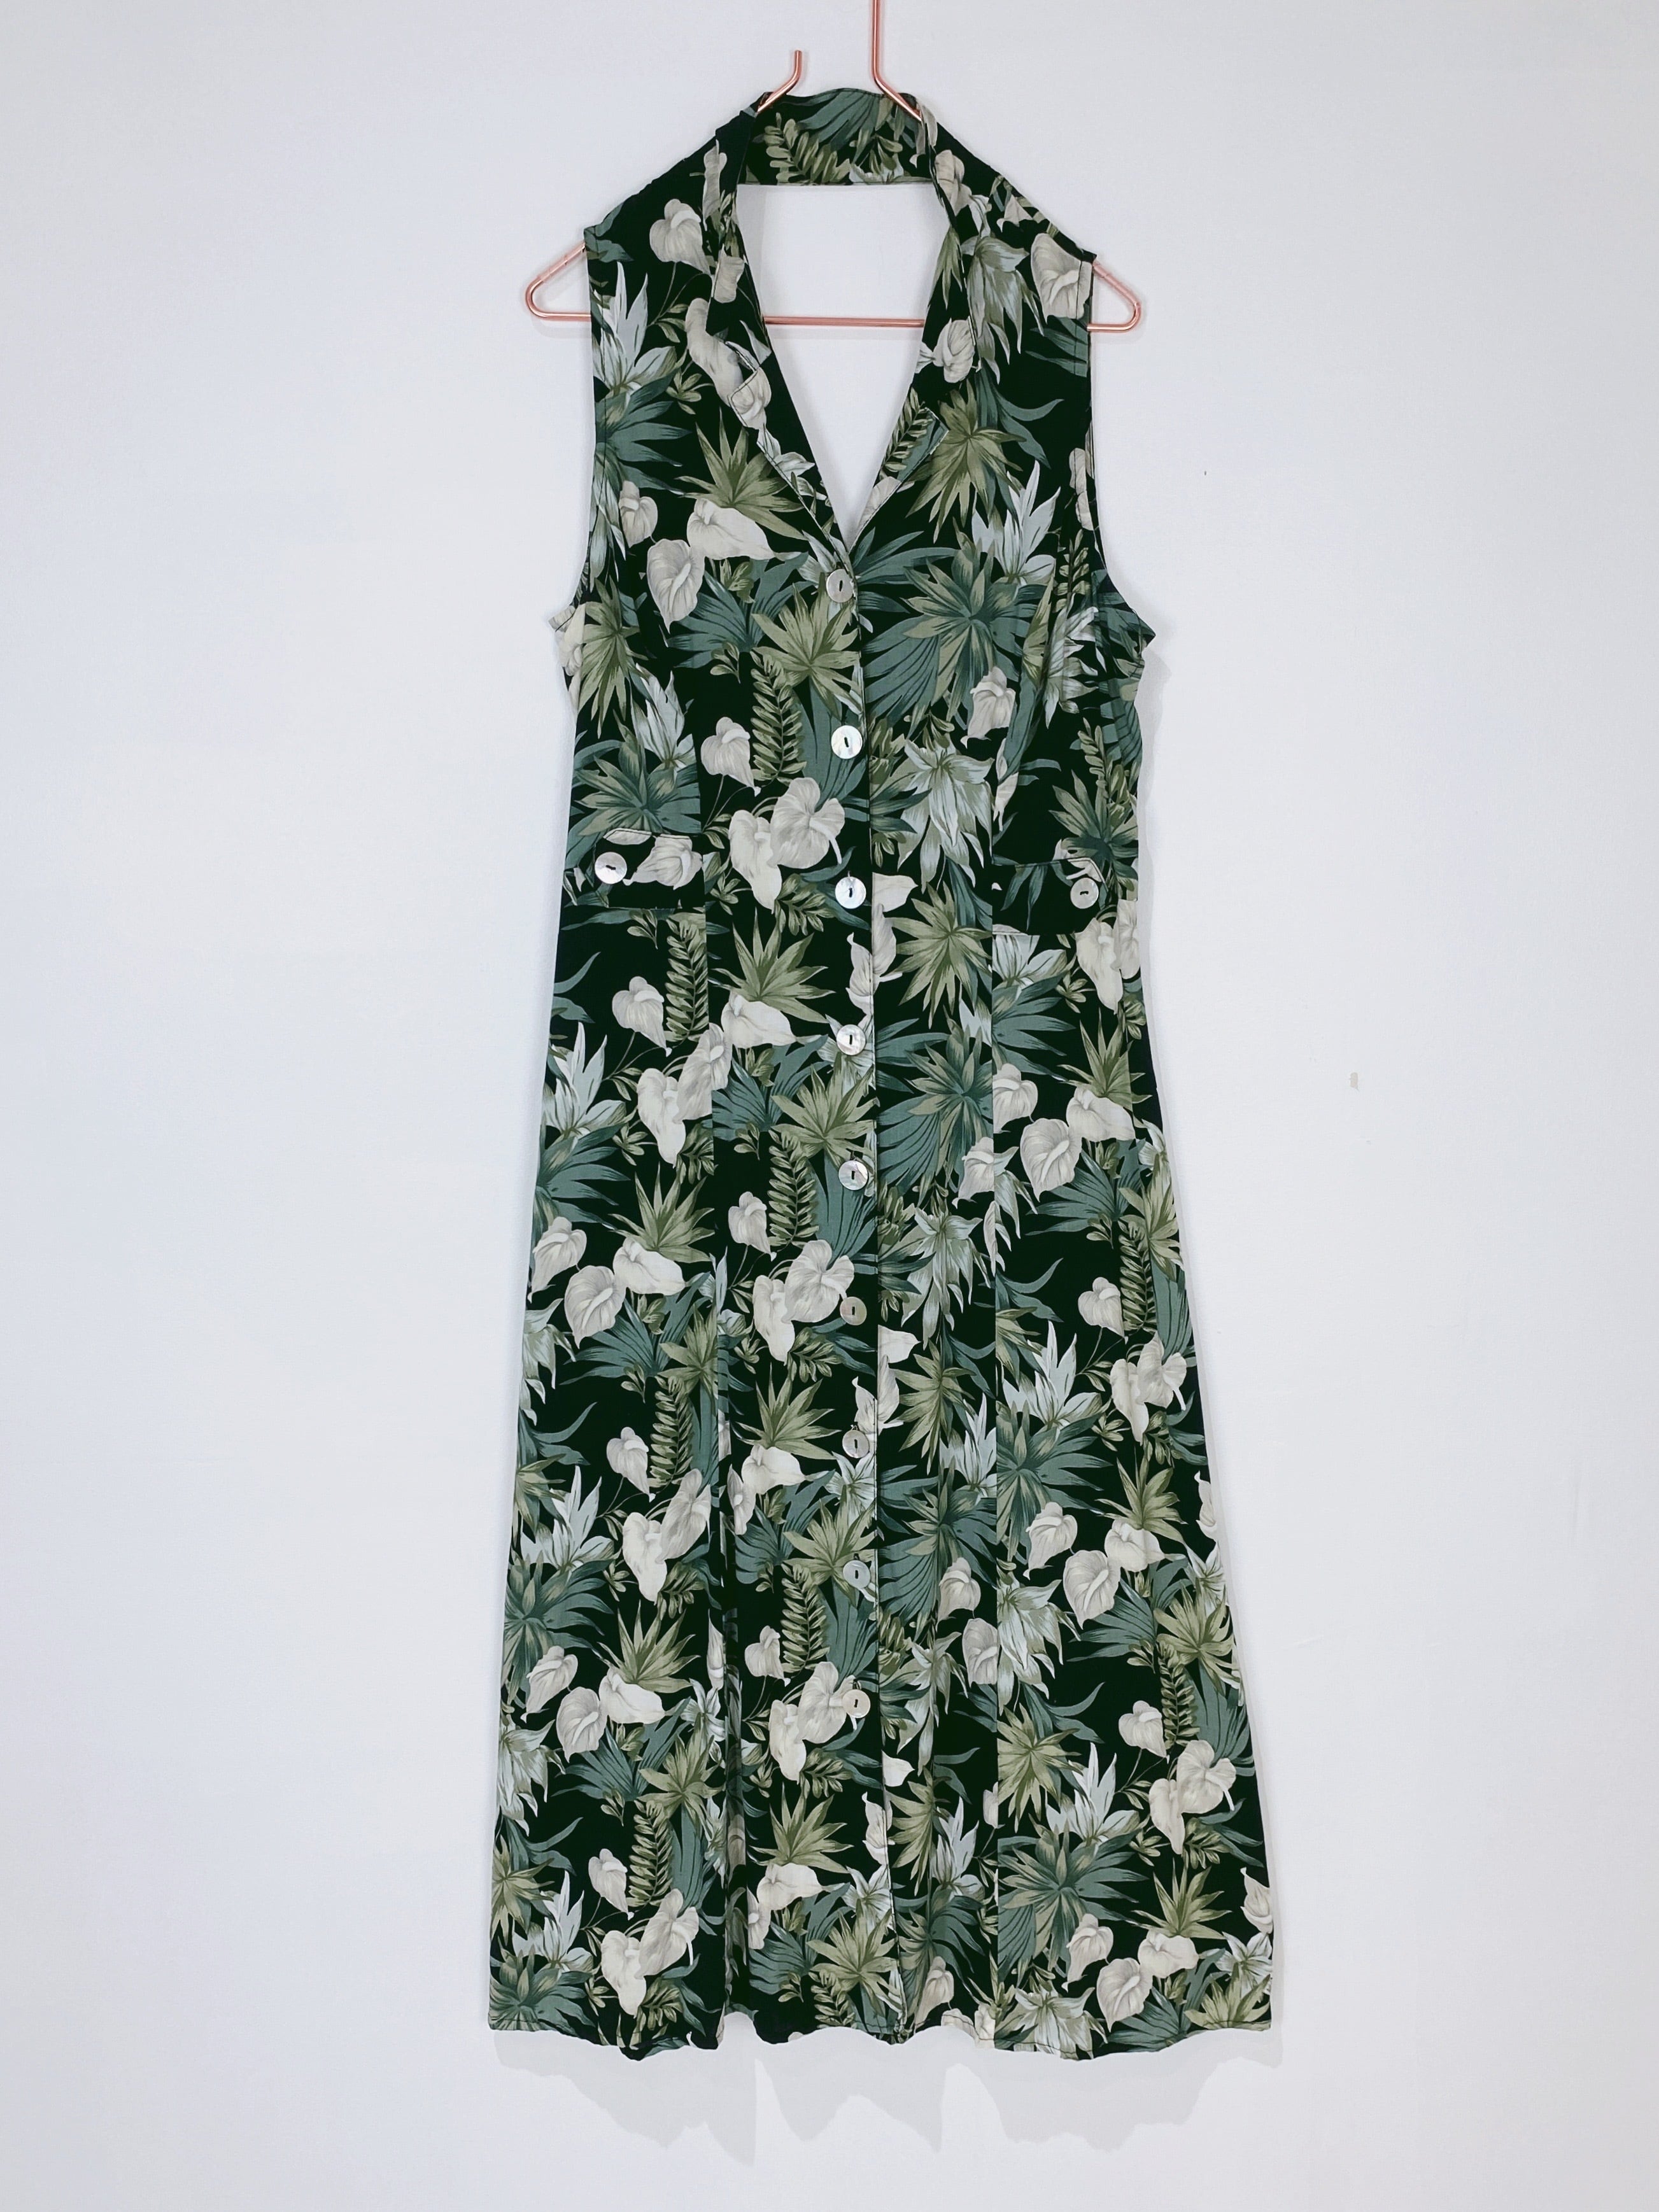 ◼︎90s botanical flower shell button maxi dress from U.S.A◼︎